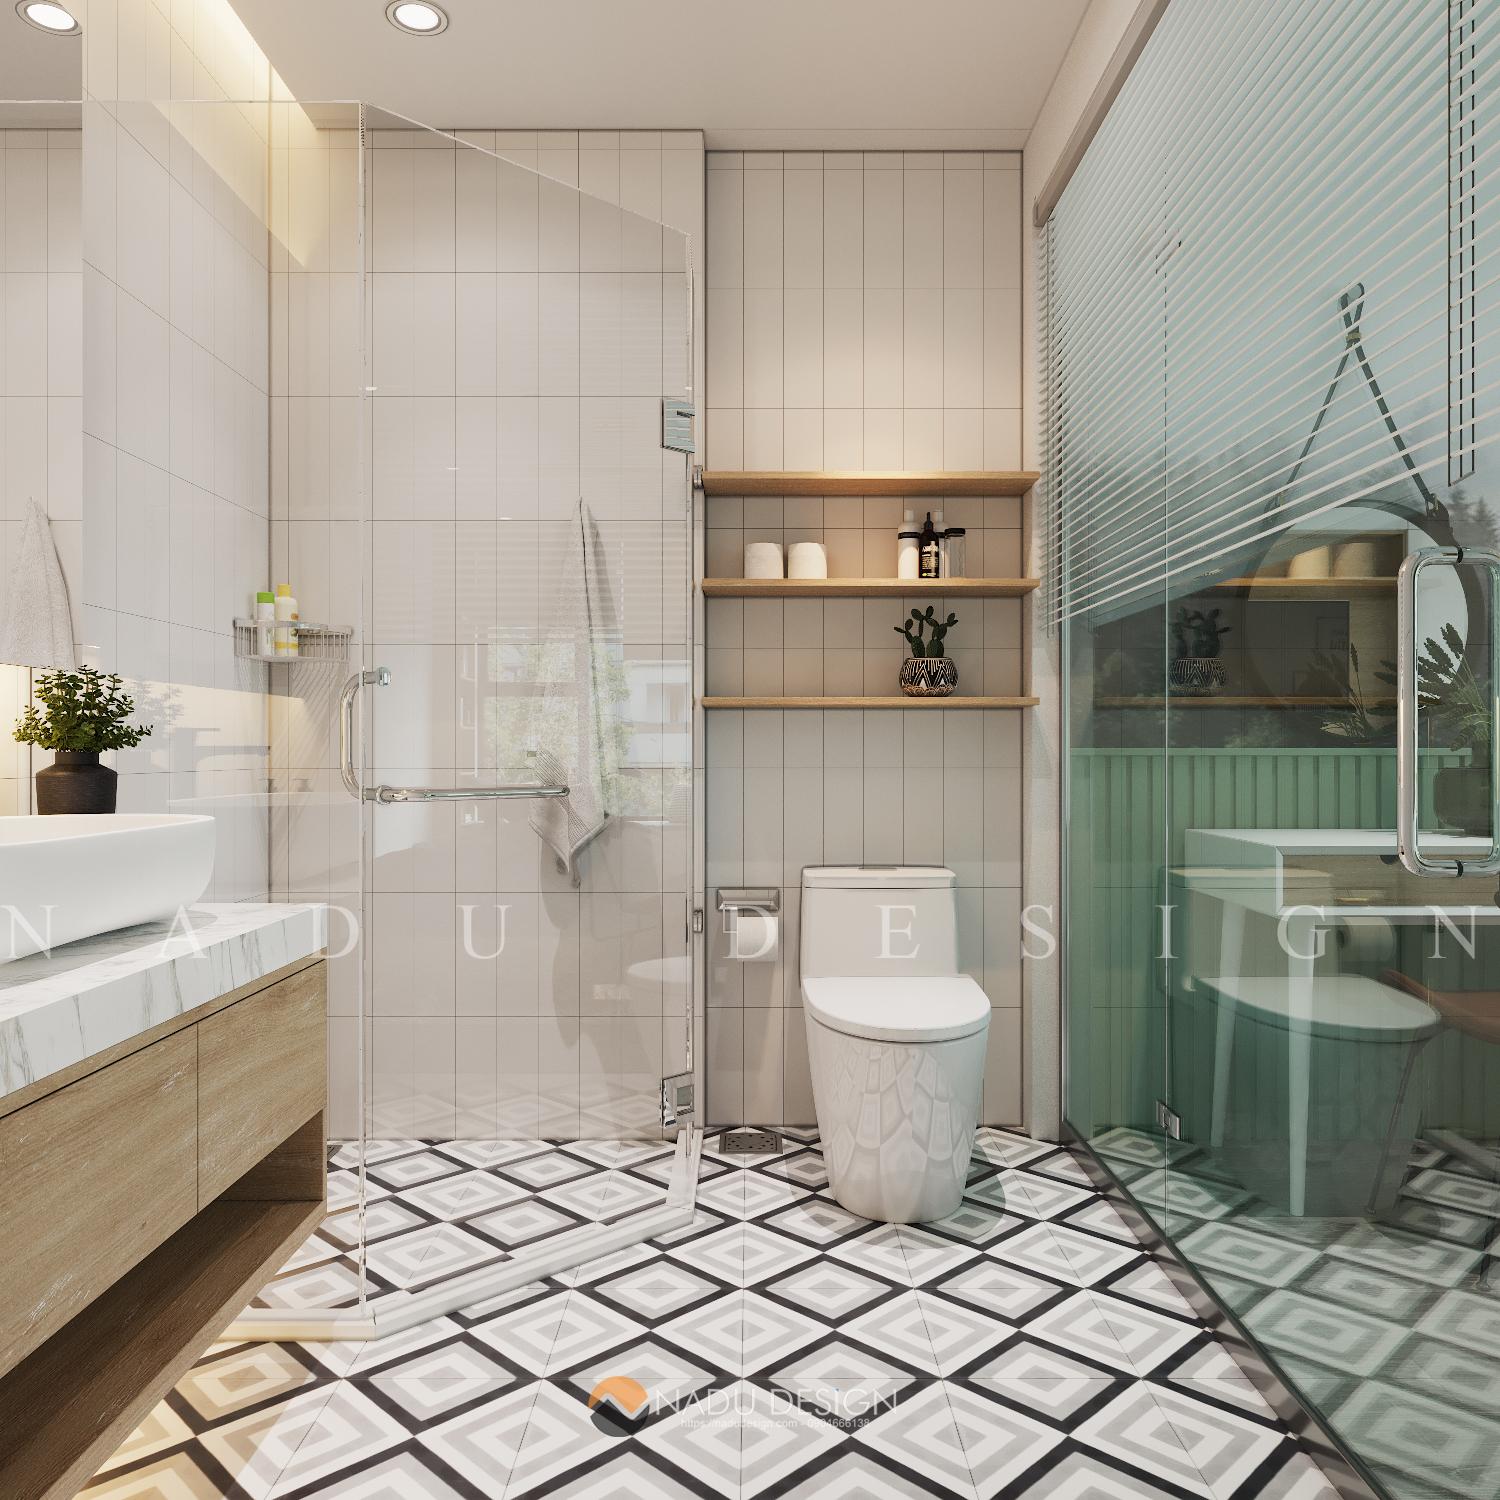 Thiết kế nhà vệ sinh âm sàn đã trở thành một xu hướng mới cho những căn hộ và những ngôi nhà hiện đại vào năm